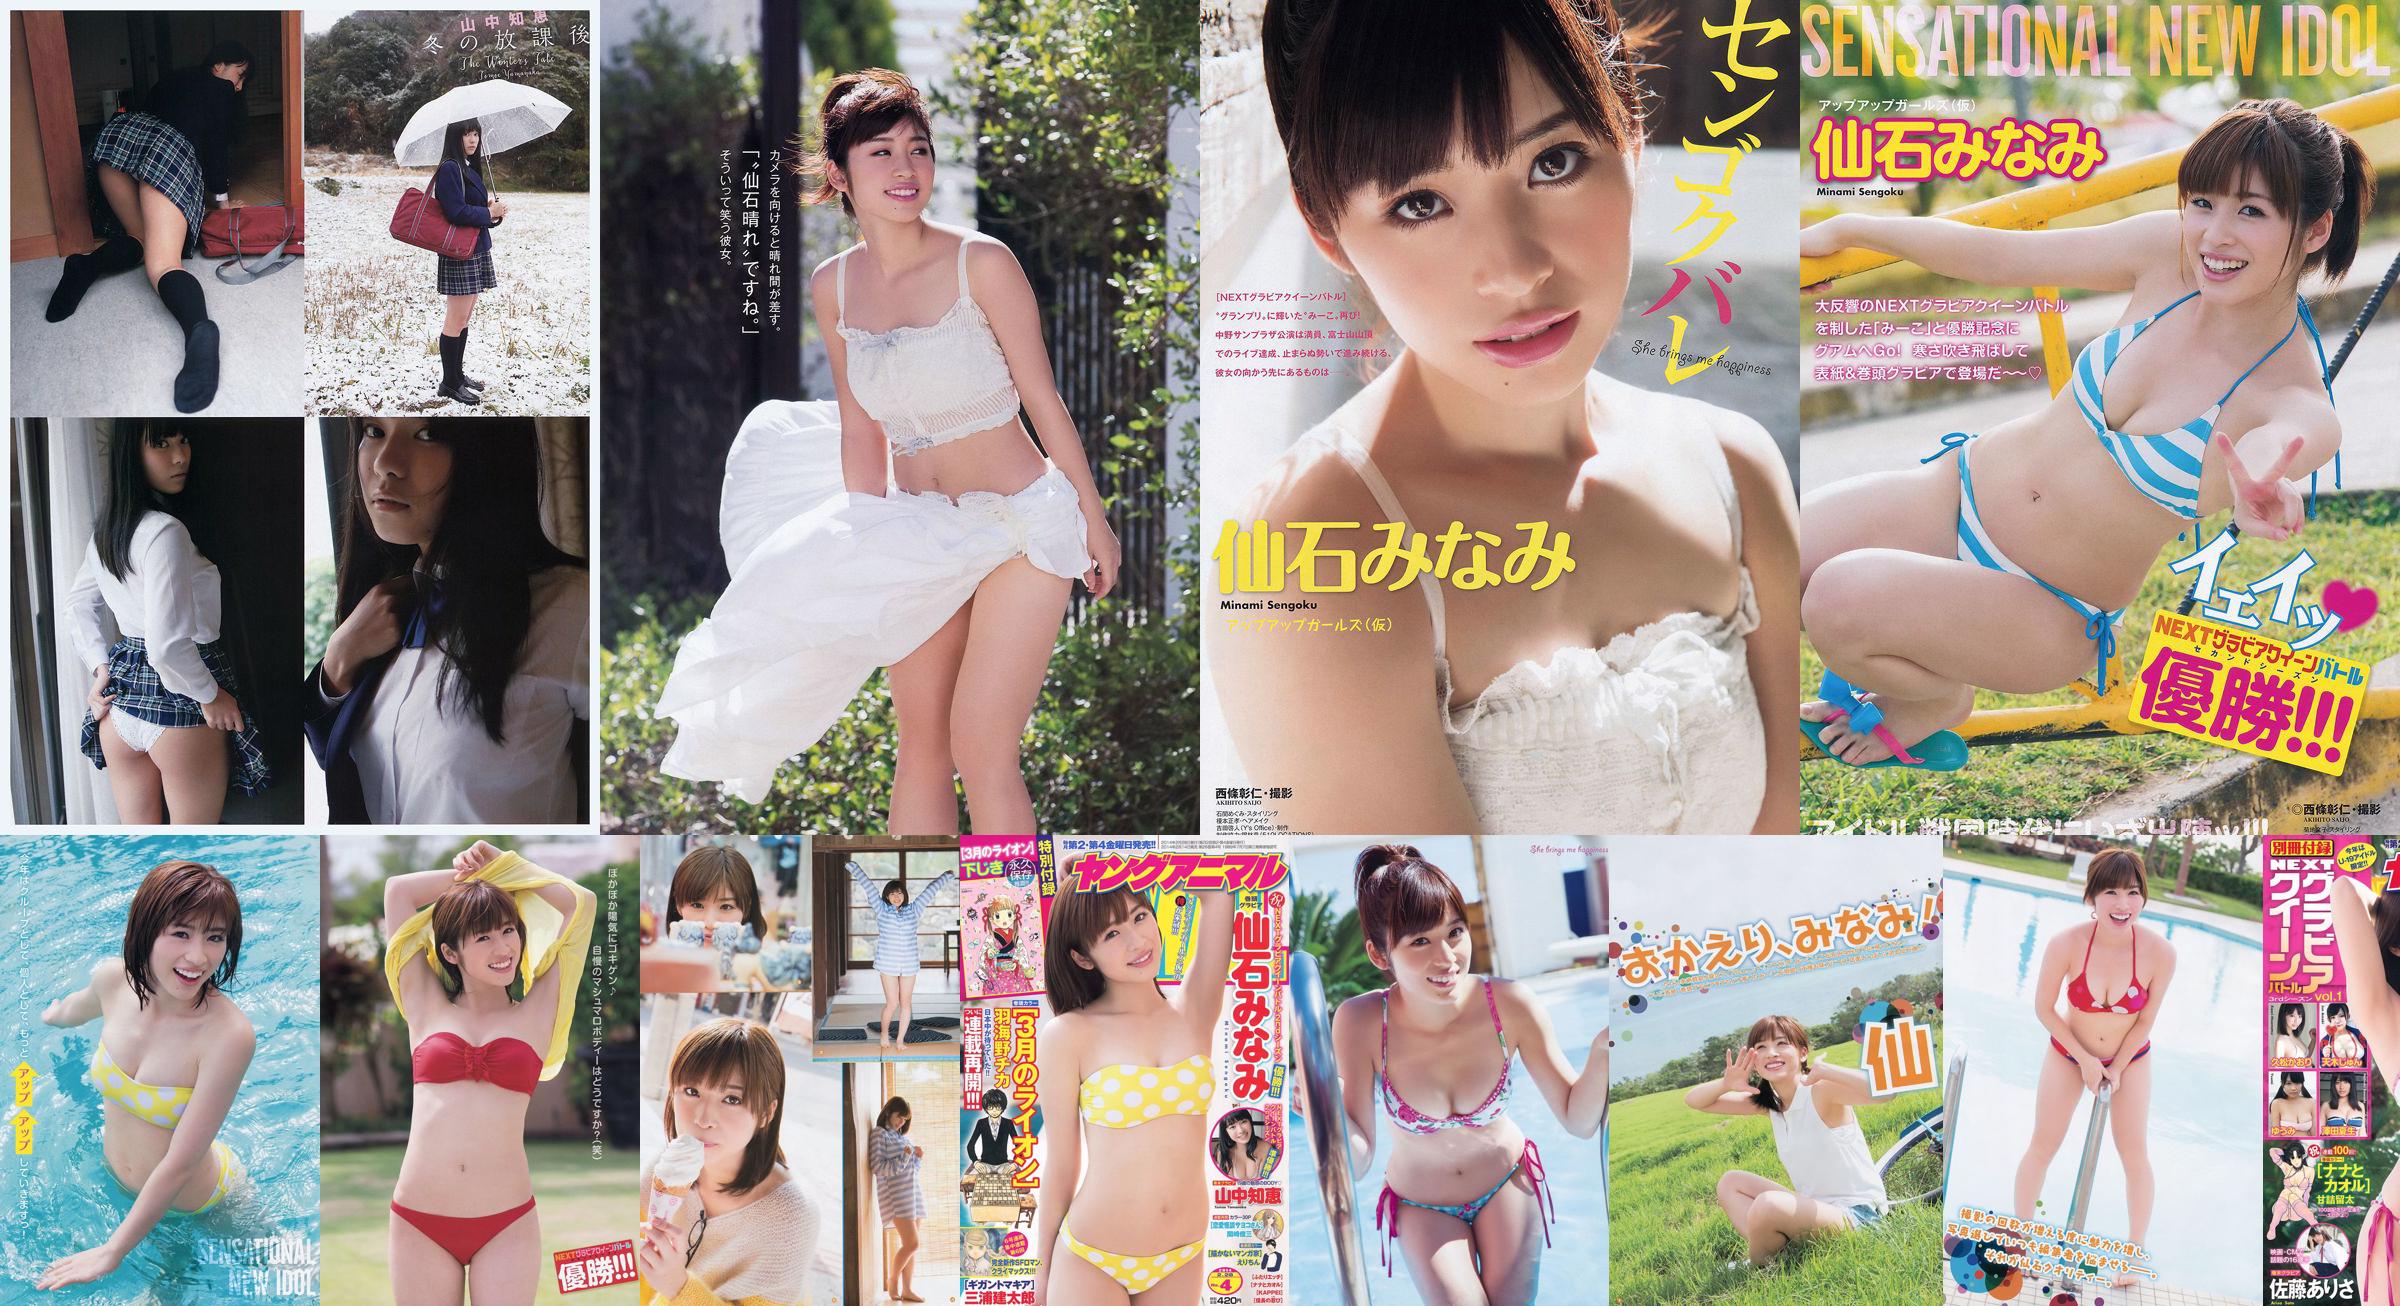 [Young Gangan] Senshi み な み Yamanaka Tomoji Shiraishi ア ヤ Kataoka Saya 2014 No.01 Photo Magazine No.b5b2da Trang 8